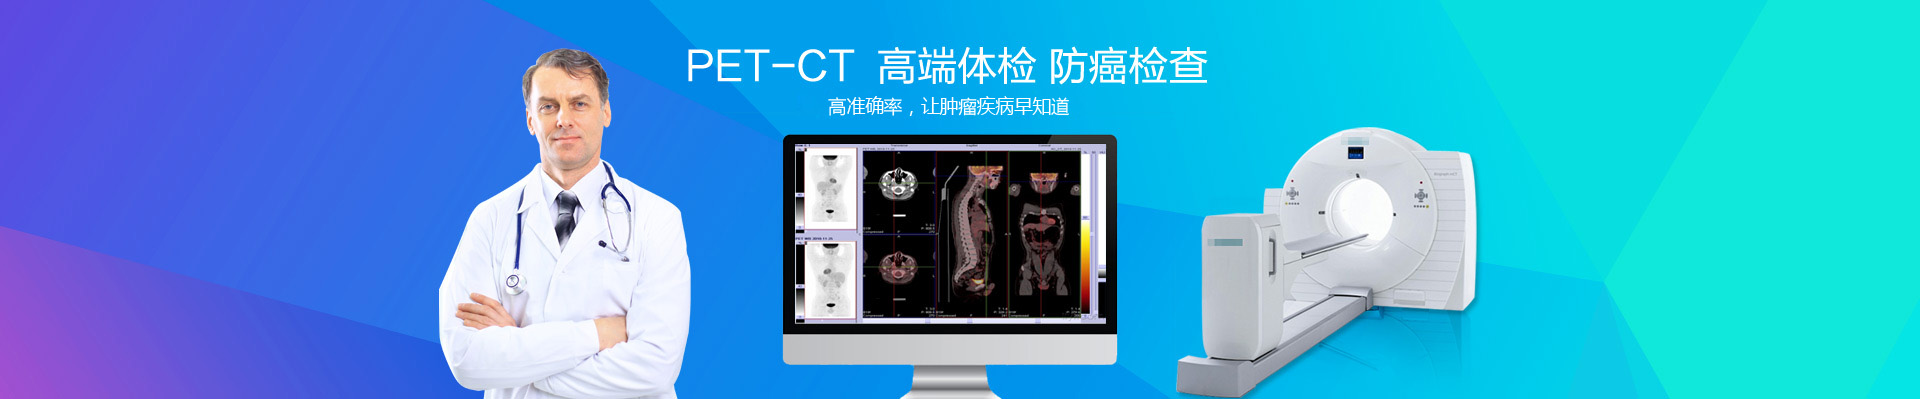  上海仁济医院PET-CT中心